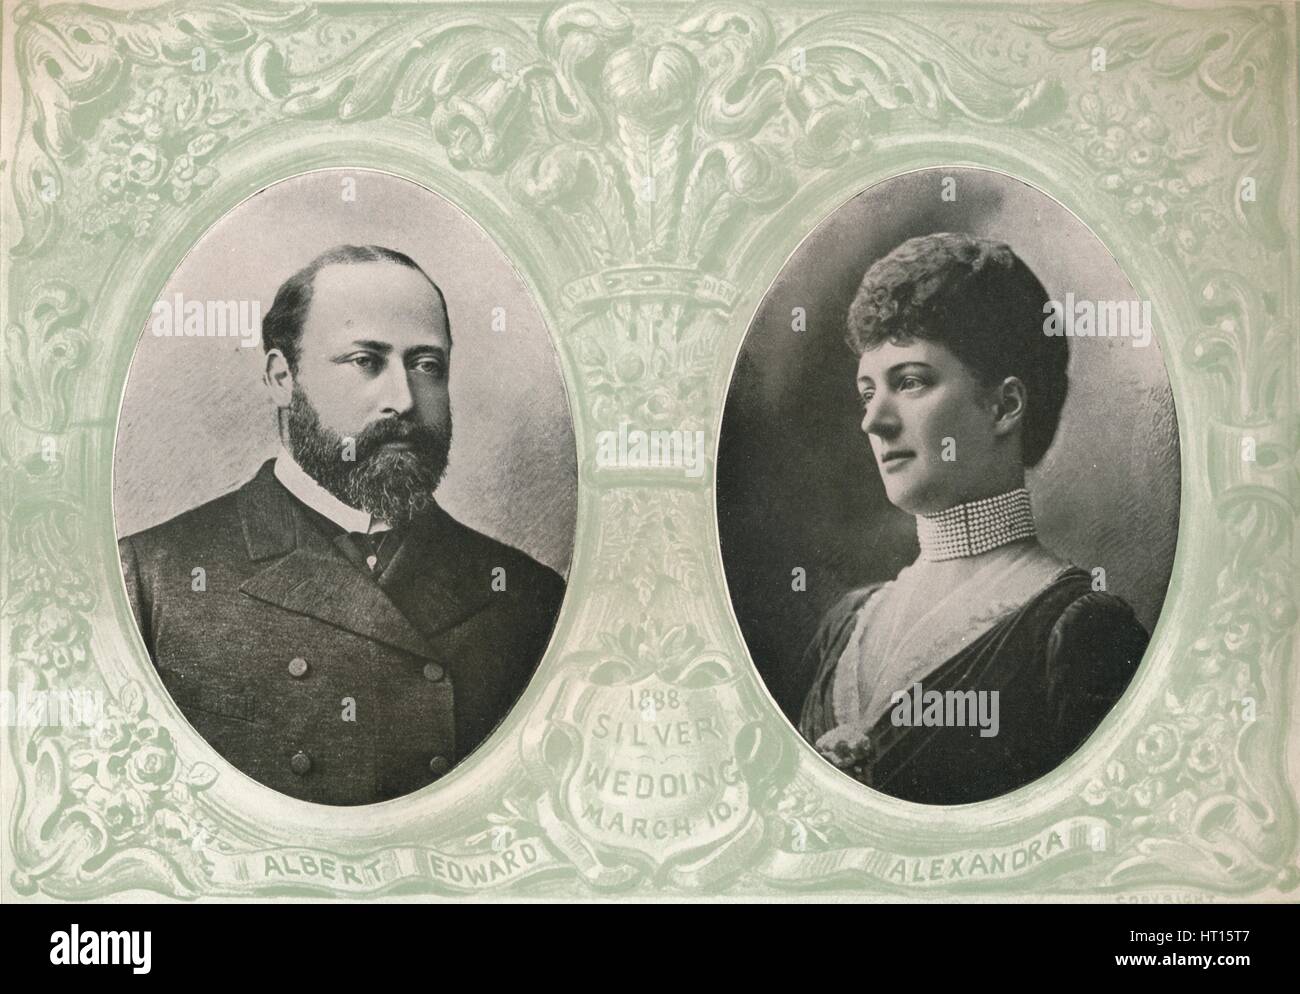 Eine Erinnerung an die Silberhochzeit von König Edward VII und Königin Alexandra, 1888 (1911). Künstler: Lafayette. Stockfoto